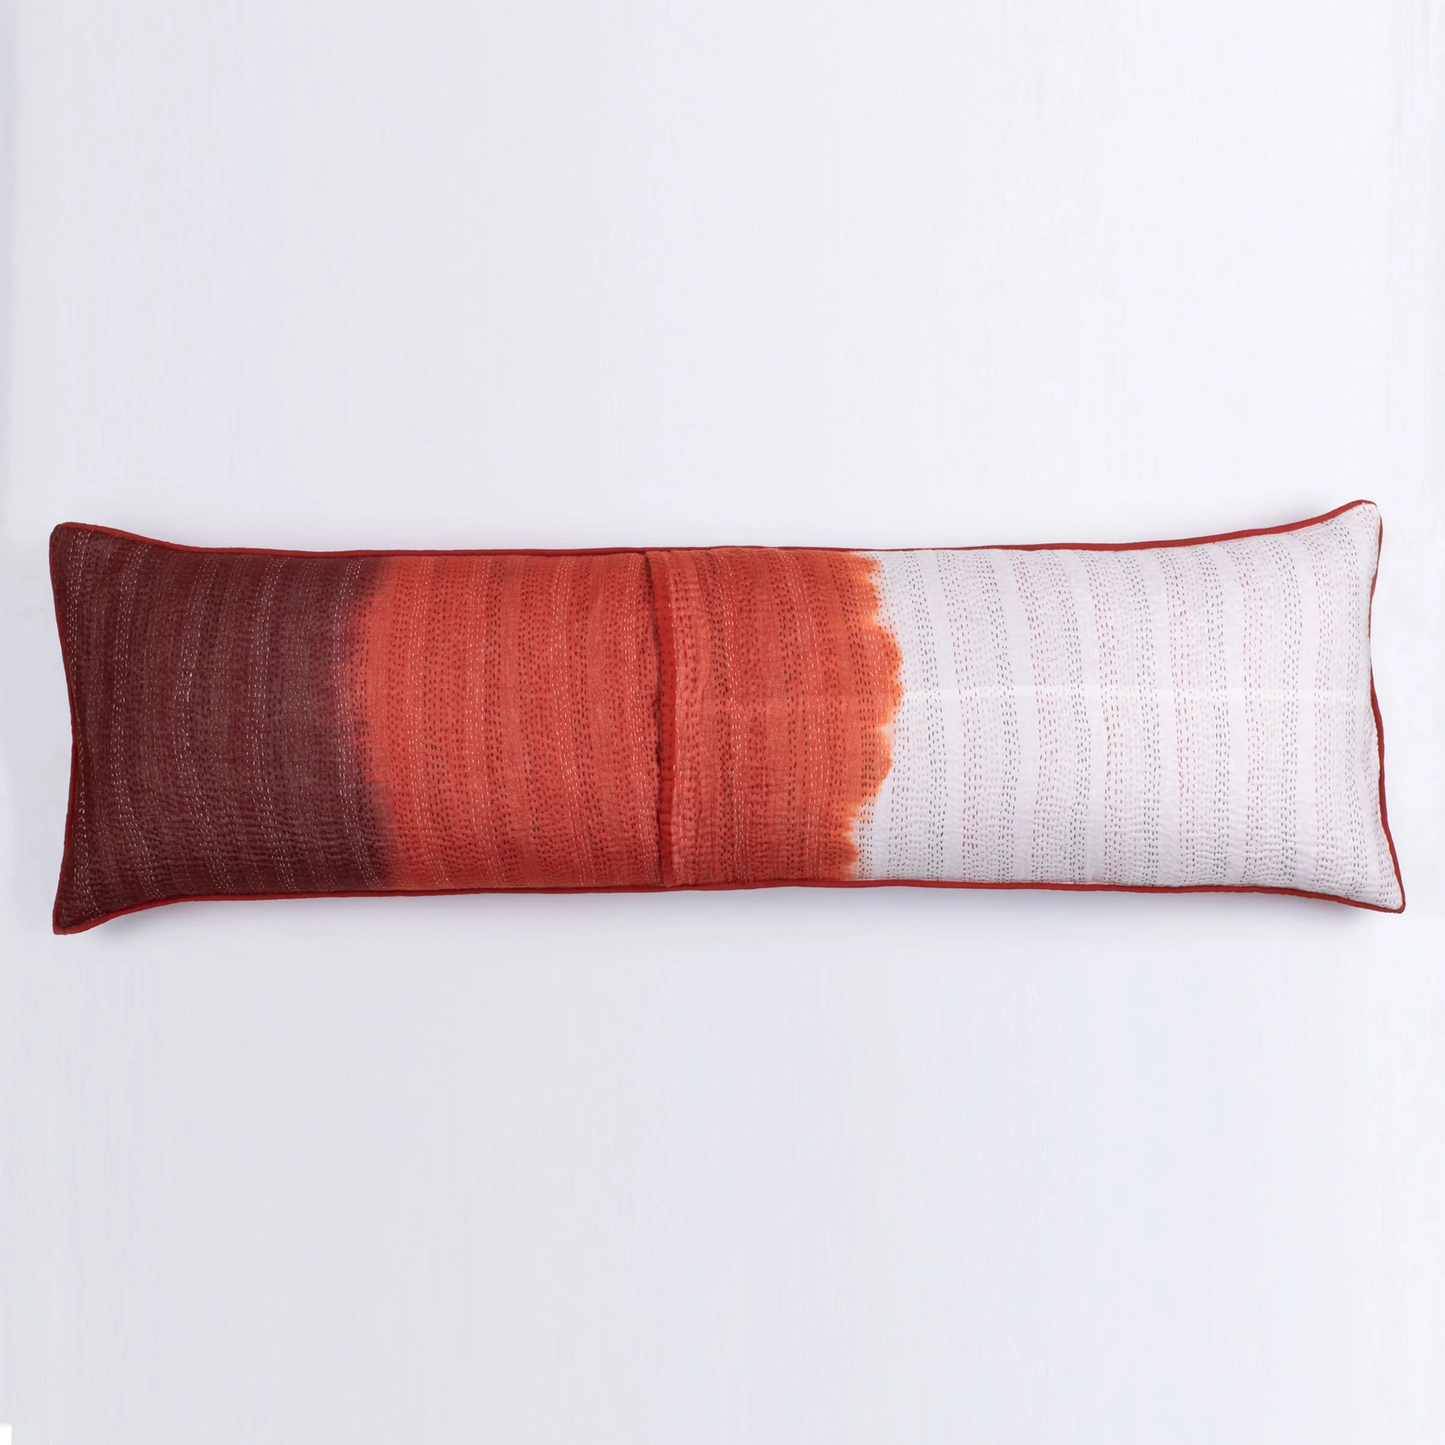 Kimono Cotton Kantha Lumber Pillows -Black -